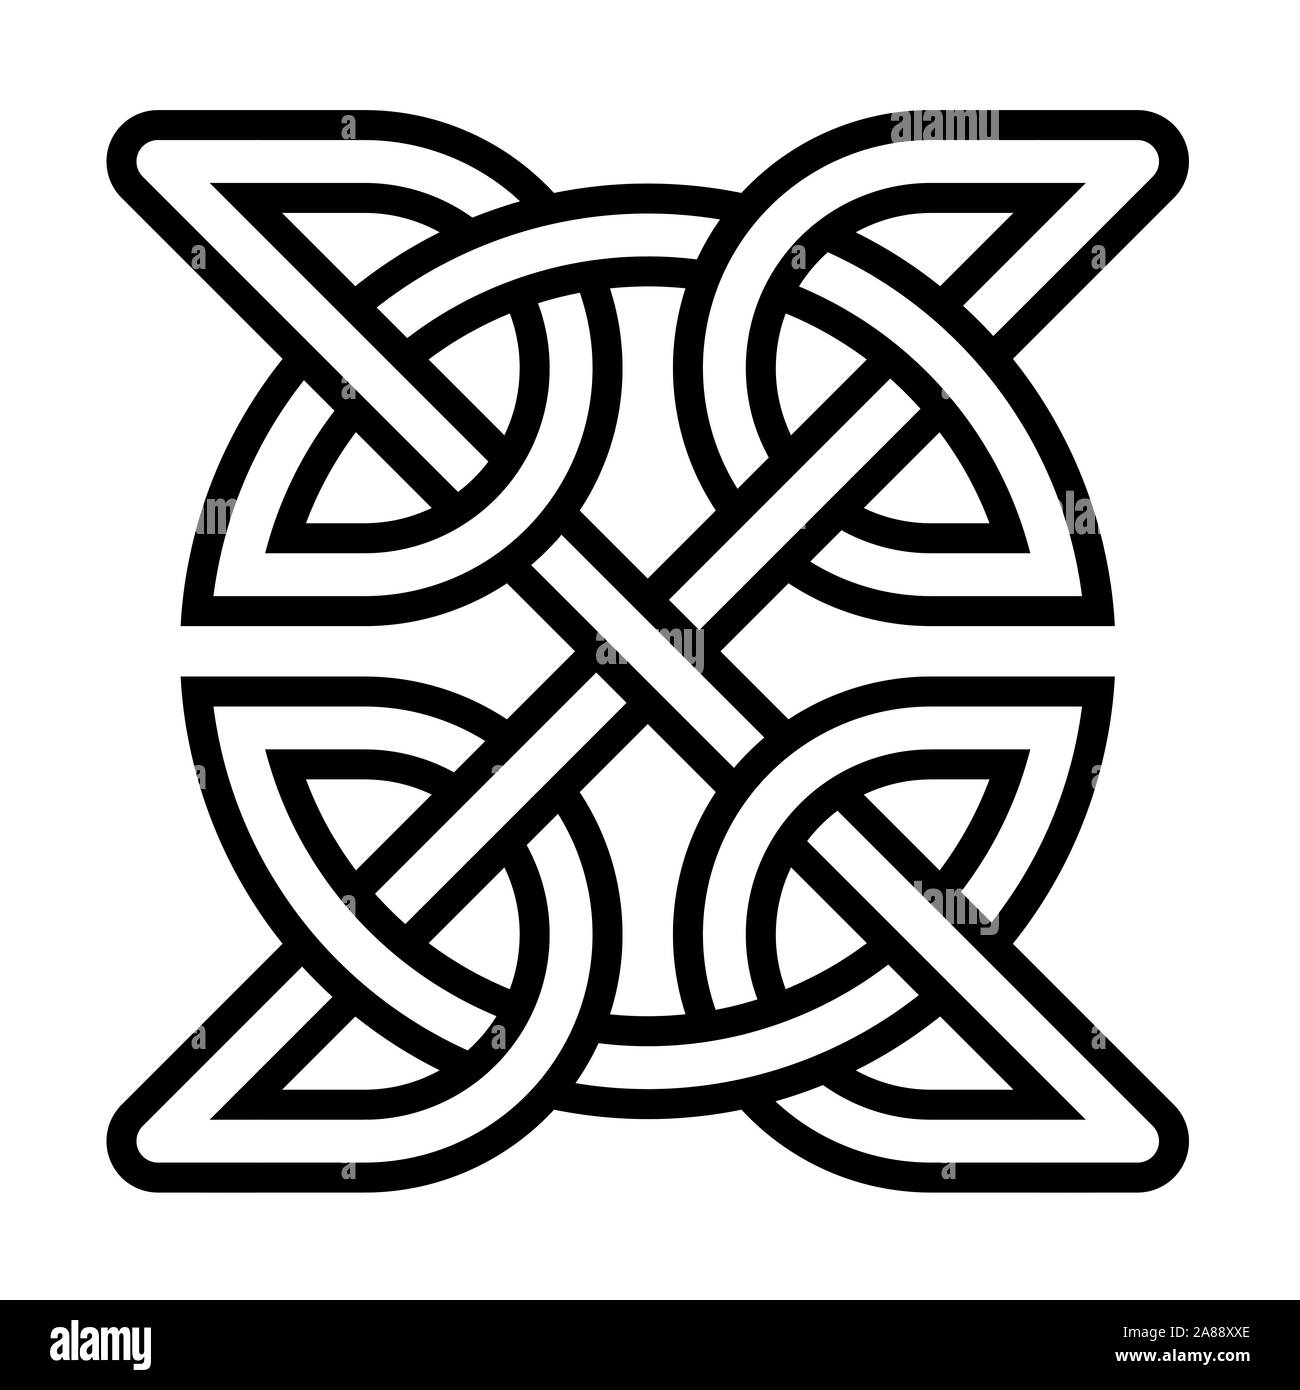 Celtic square knot symbol Stock Photo